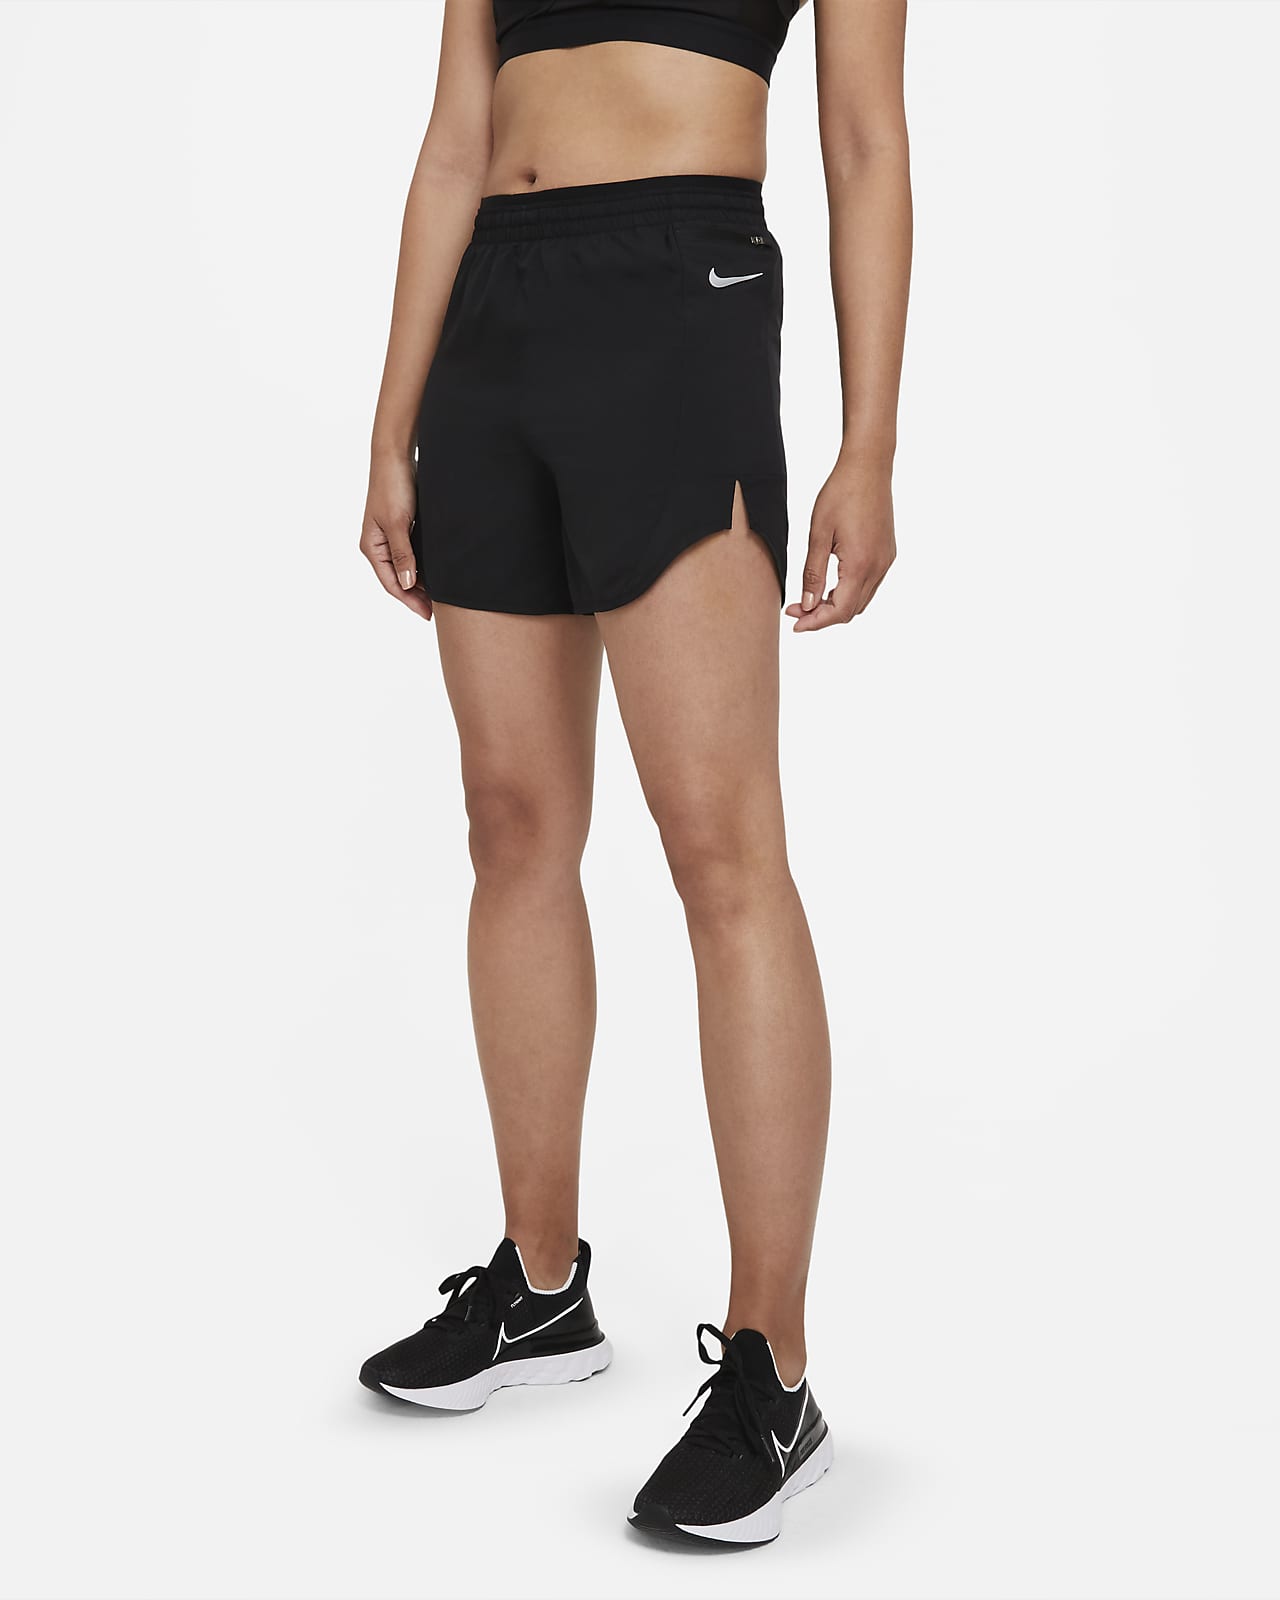 Nike Women's Running Shorts. Nike JP